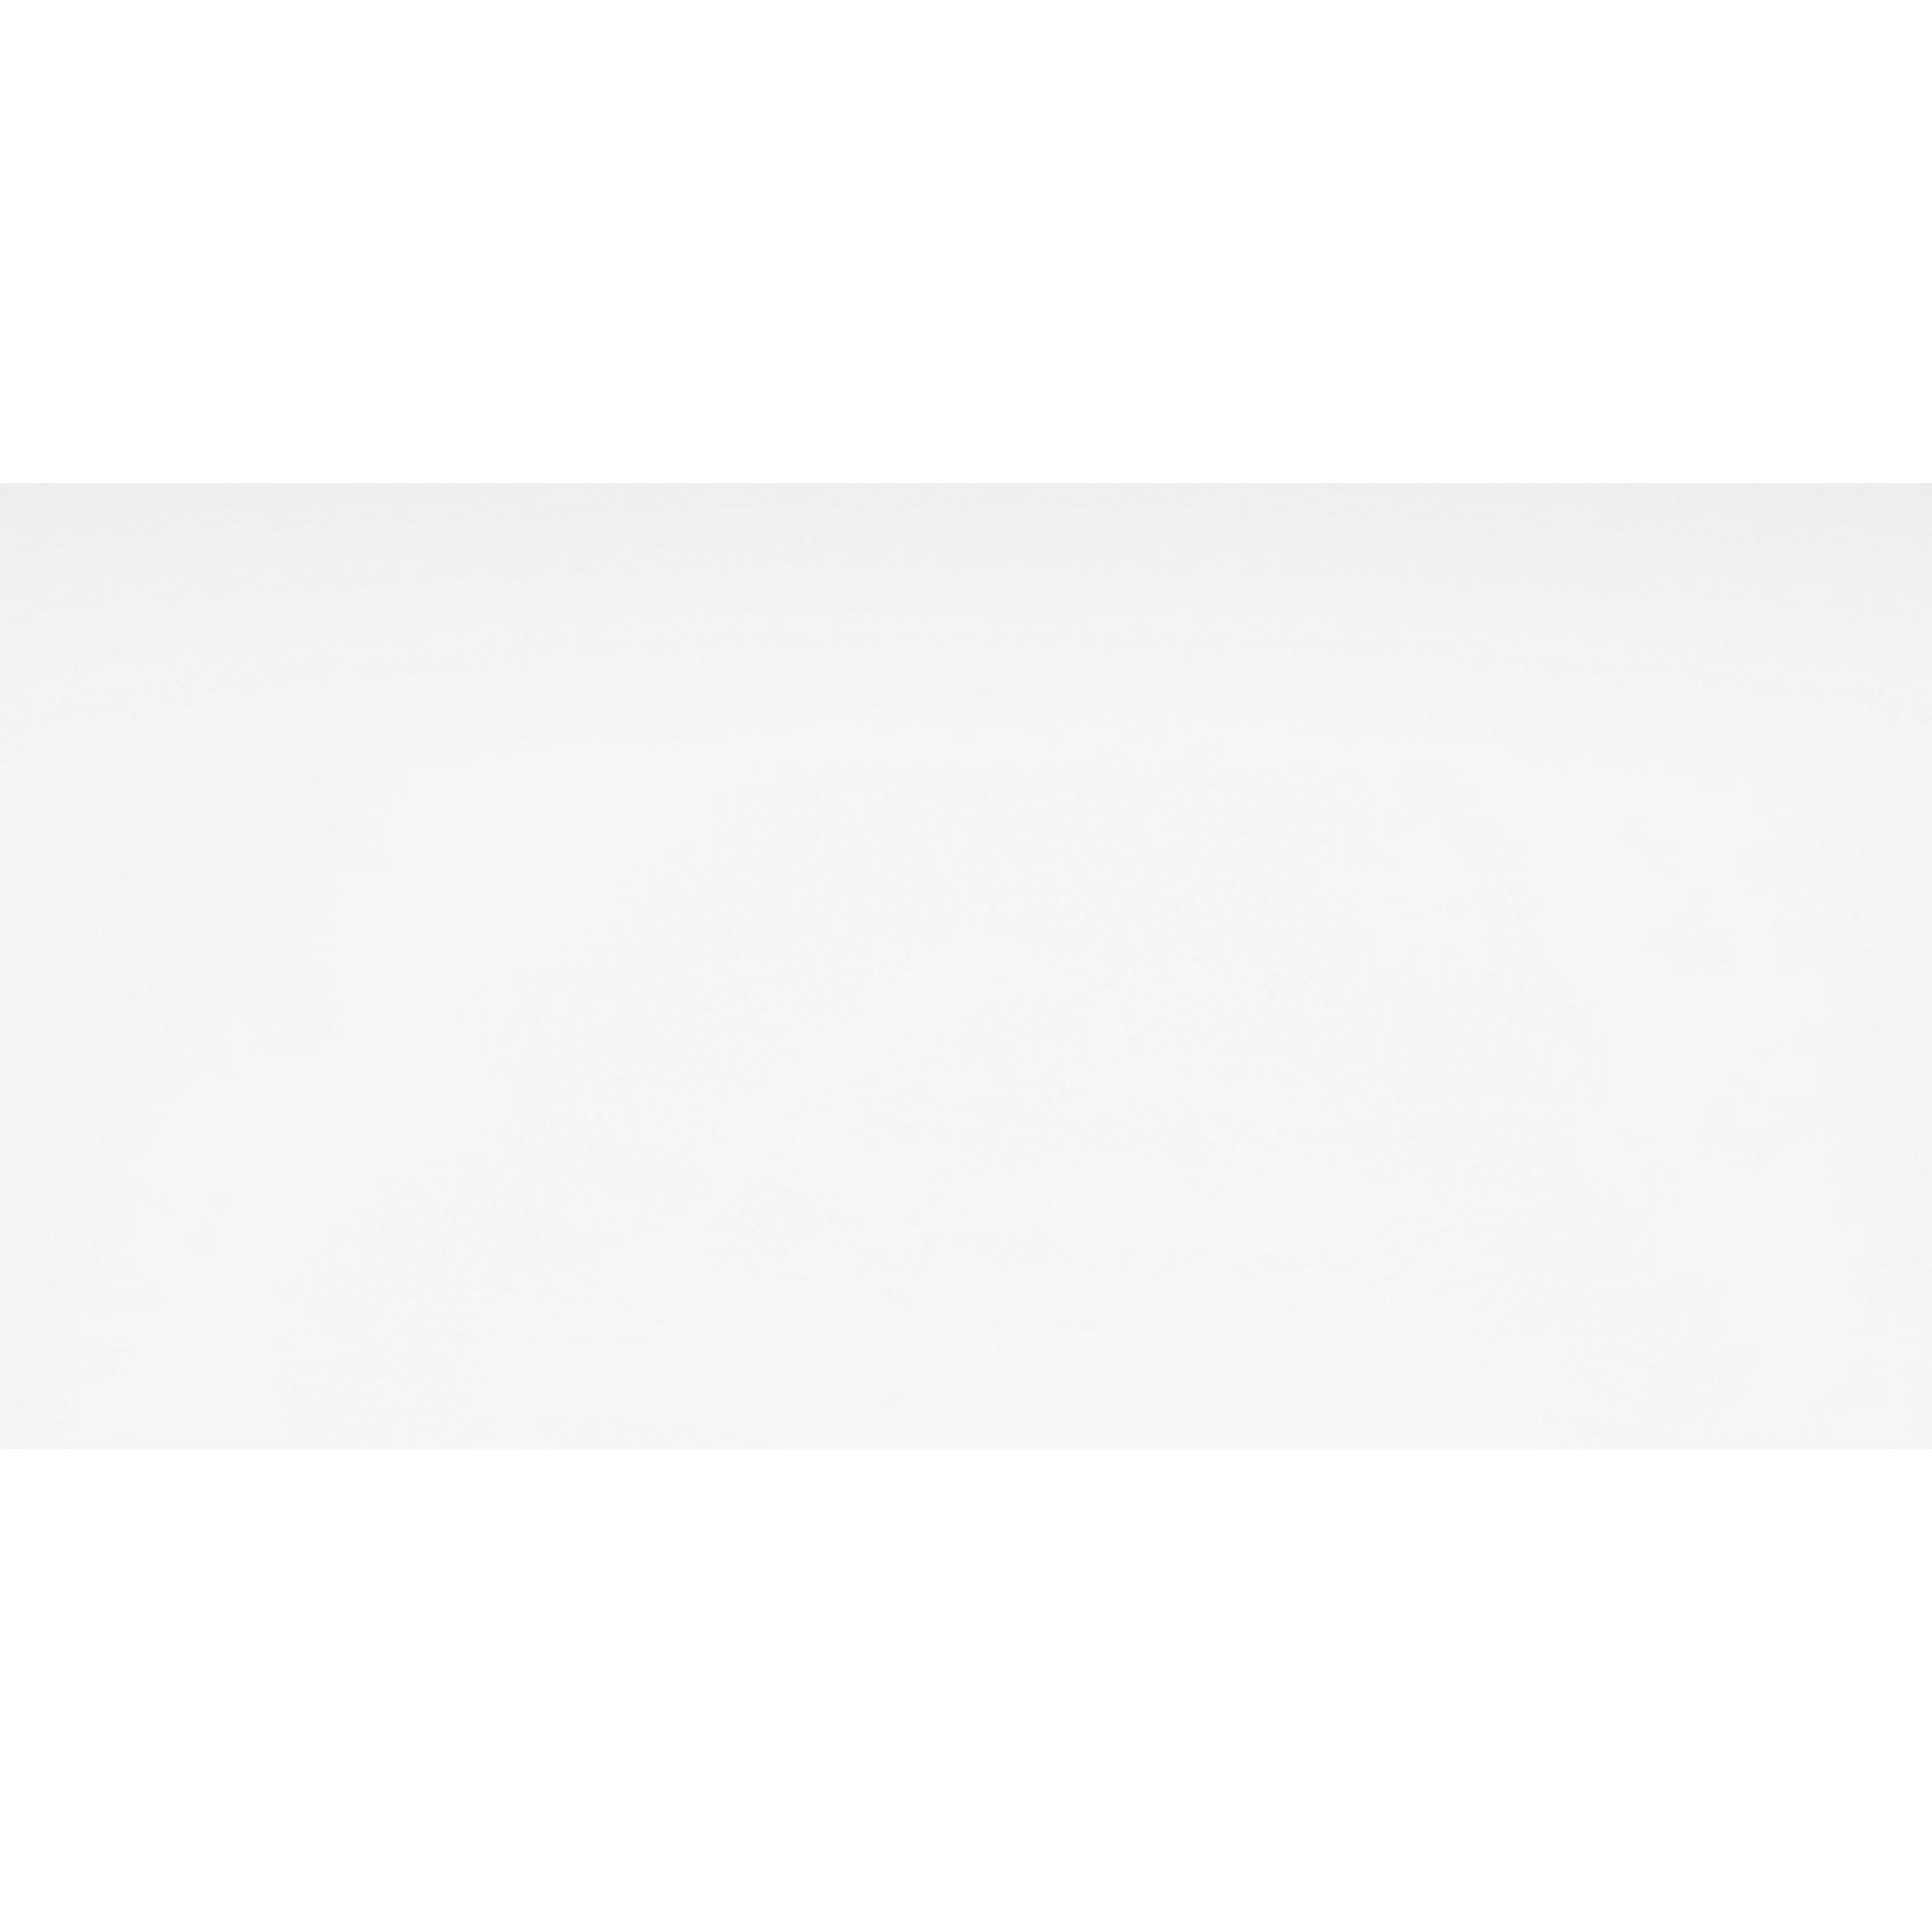 Wandfliese 'Xena' Steingut weiß glänzend 30 x 60 cm + product picture